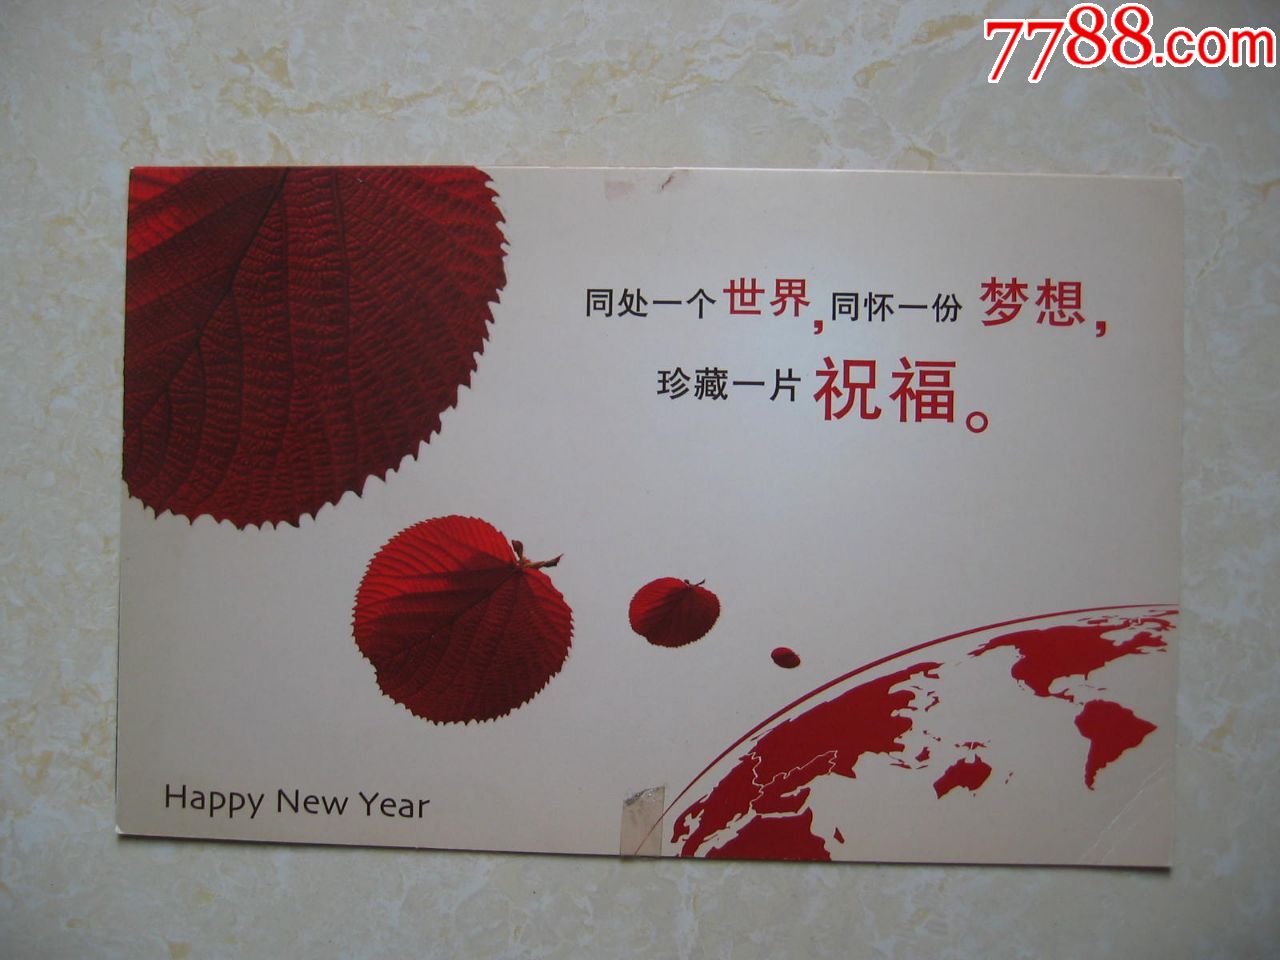 北京市邮政管理局局长章干泉全国劳动模范党委书丁前亮签名贺卡